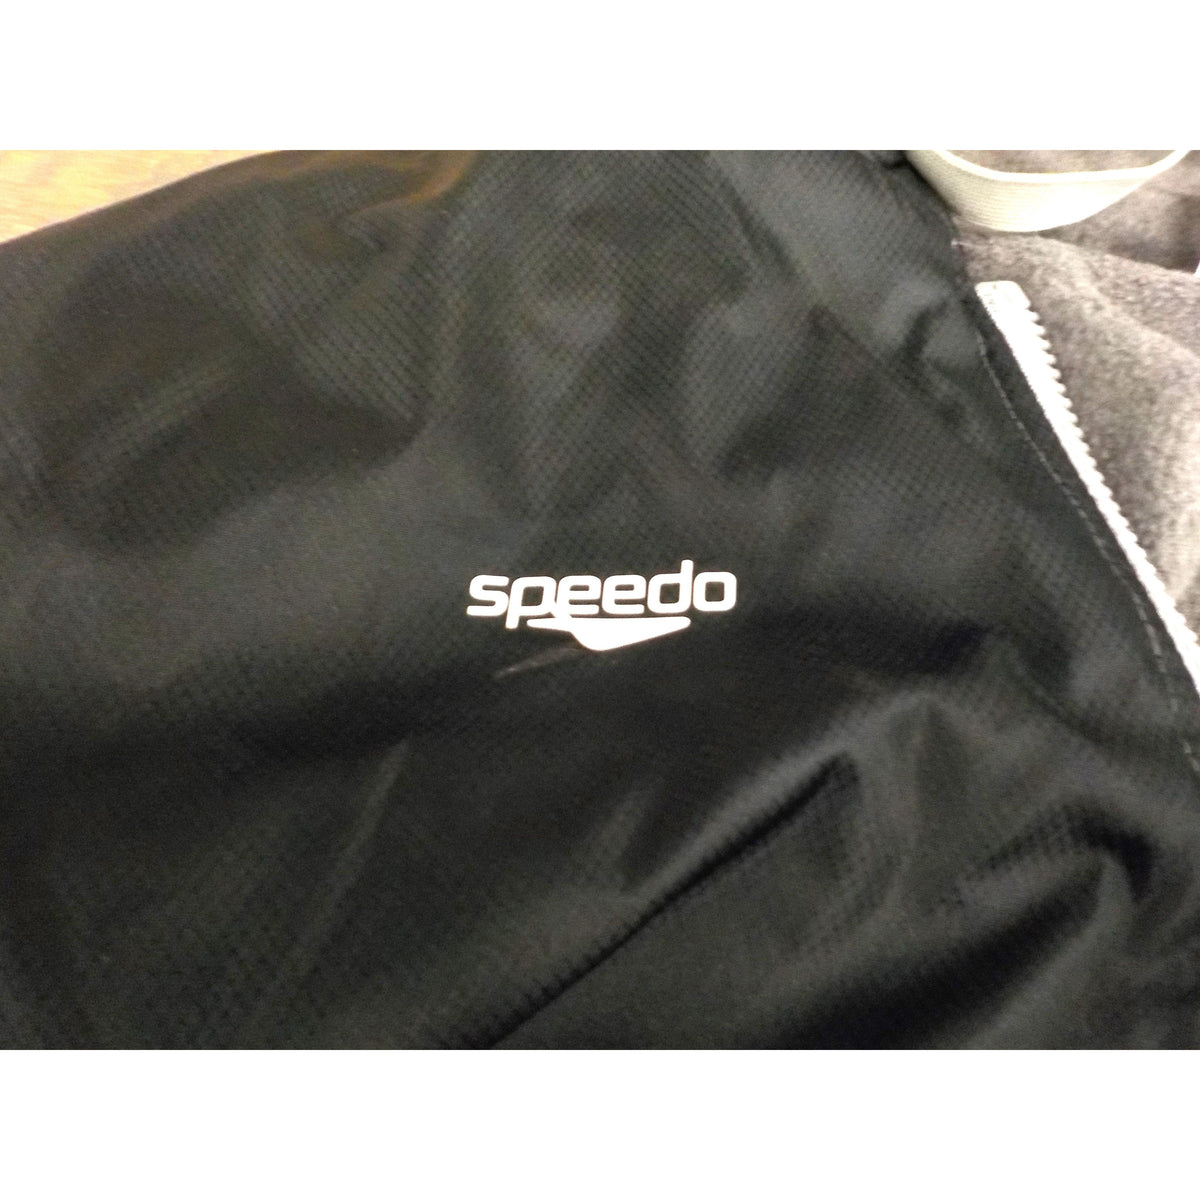 Speedo Team Parka - Speedo Black - Large - Used - Acceptable